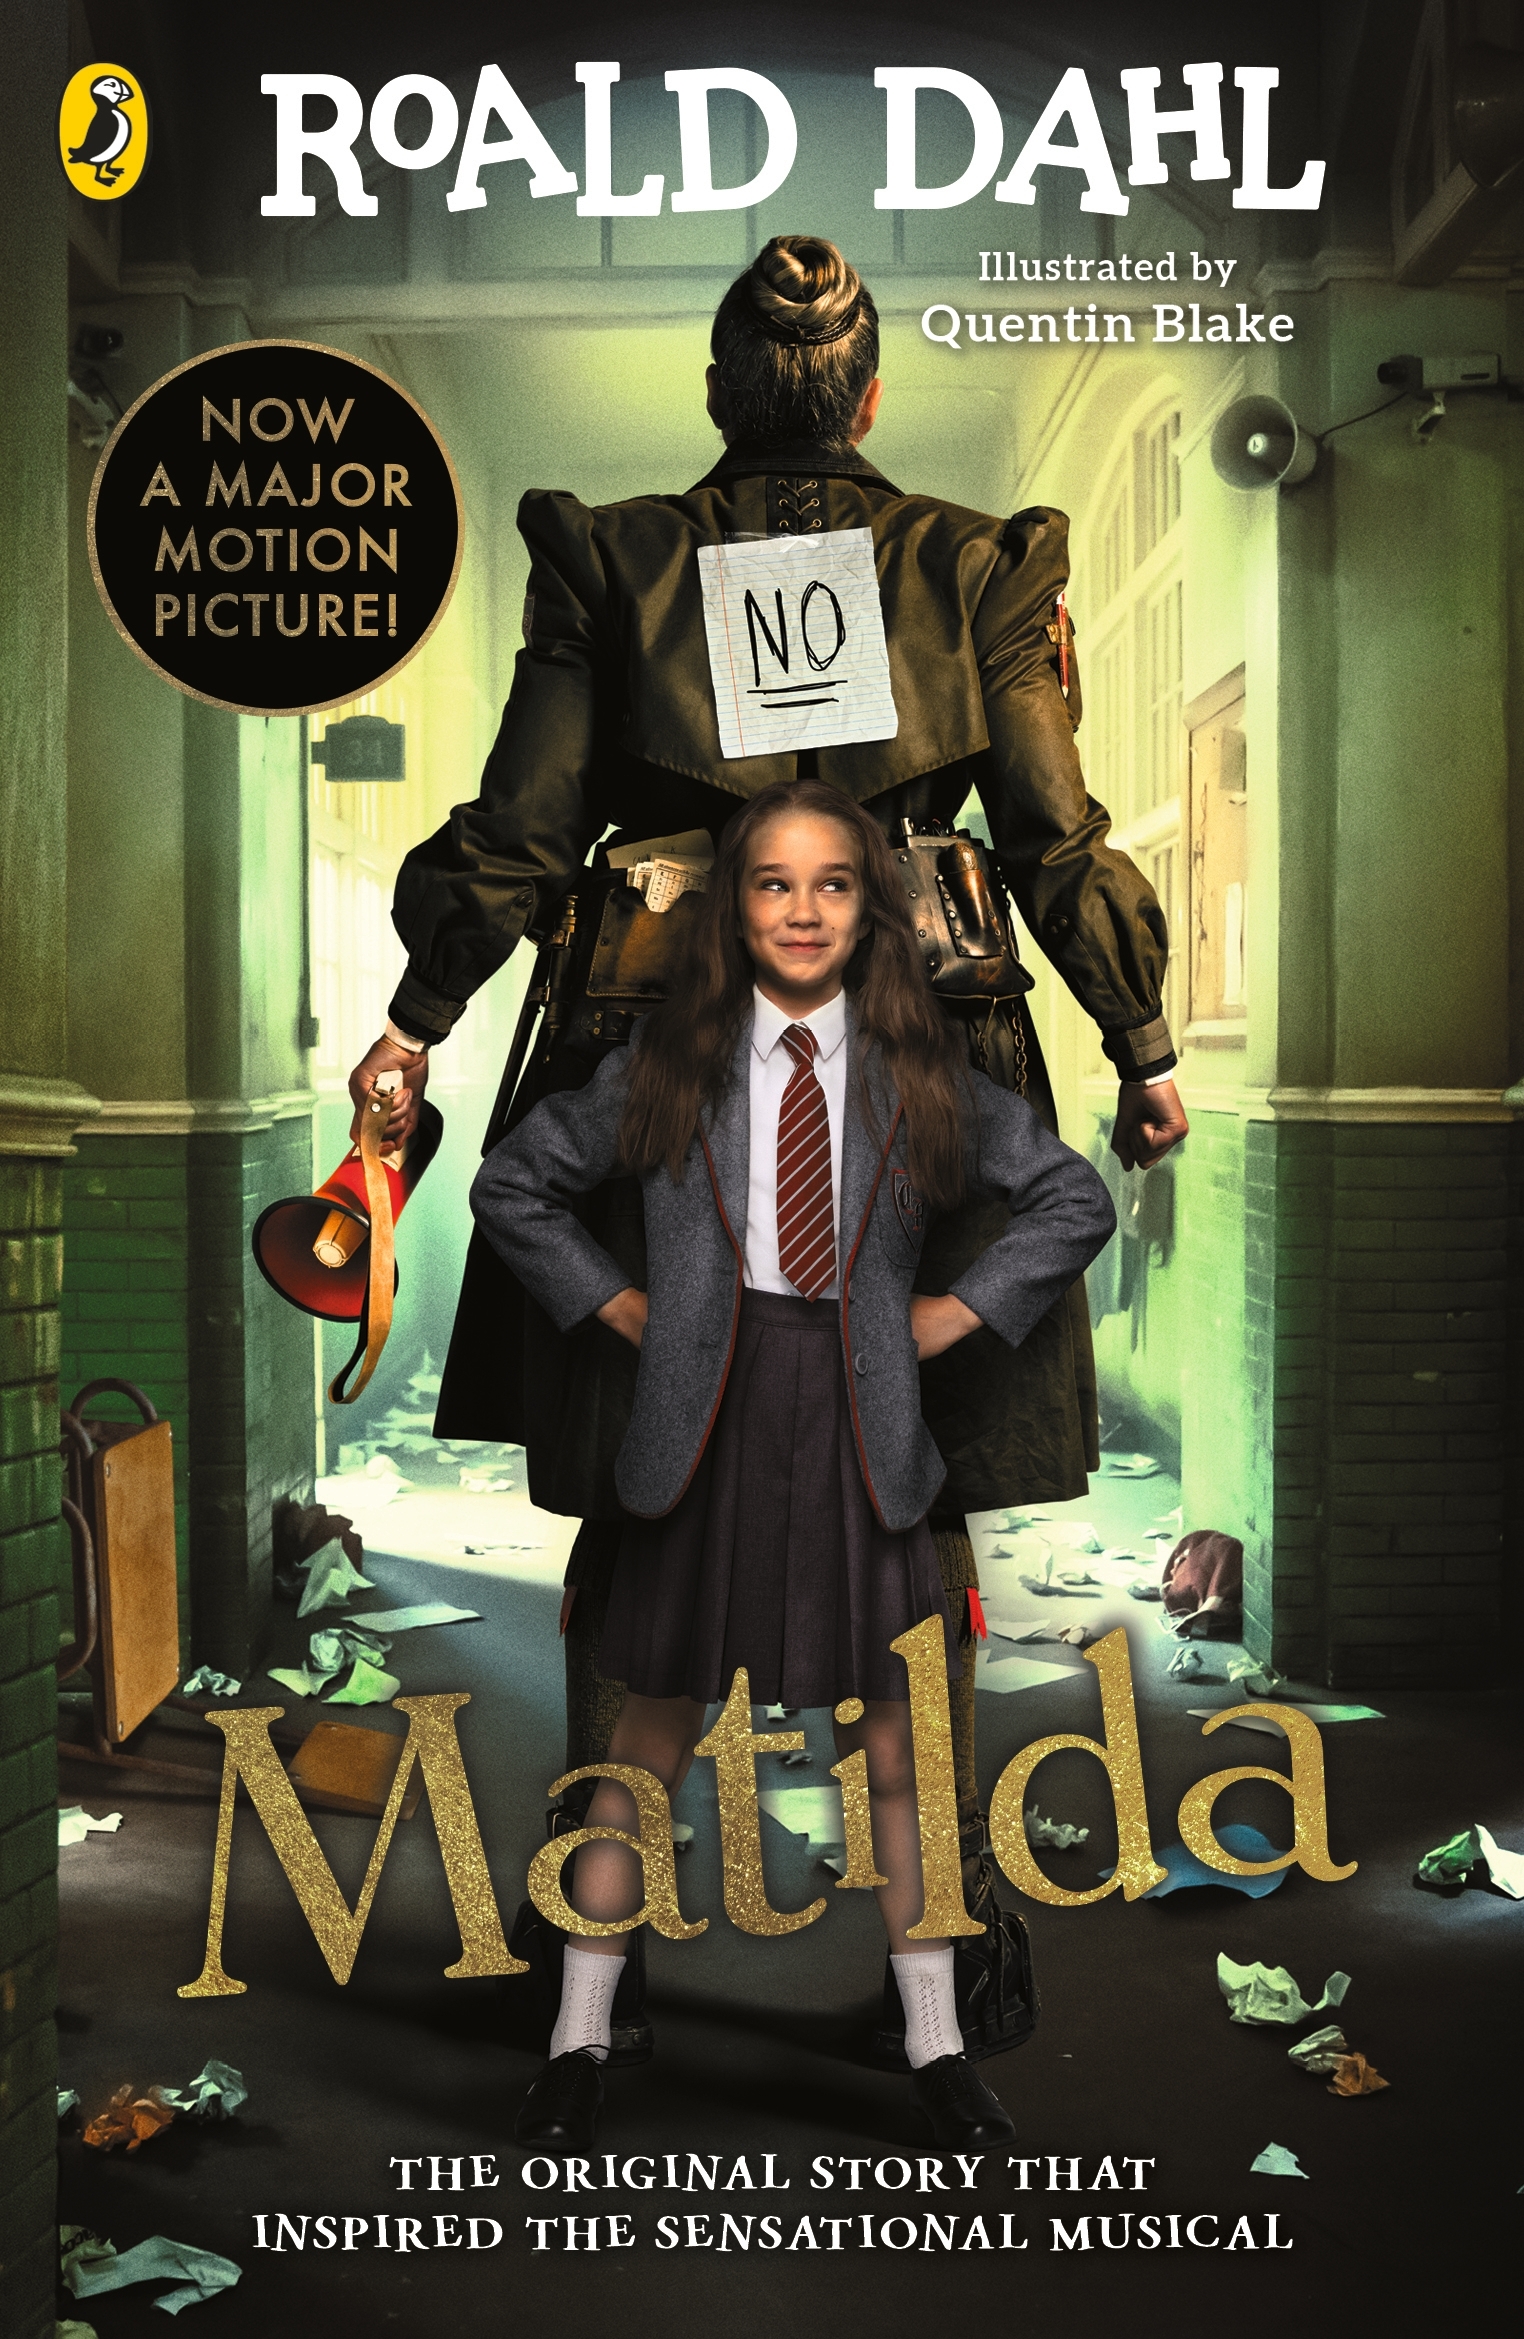 What Makes a Matilda - Penguin Books Australia